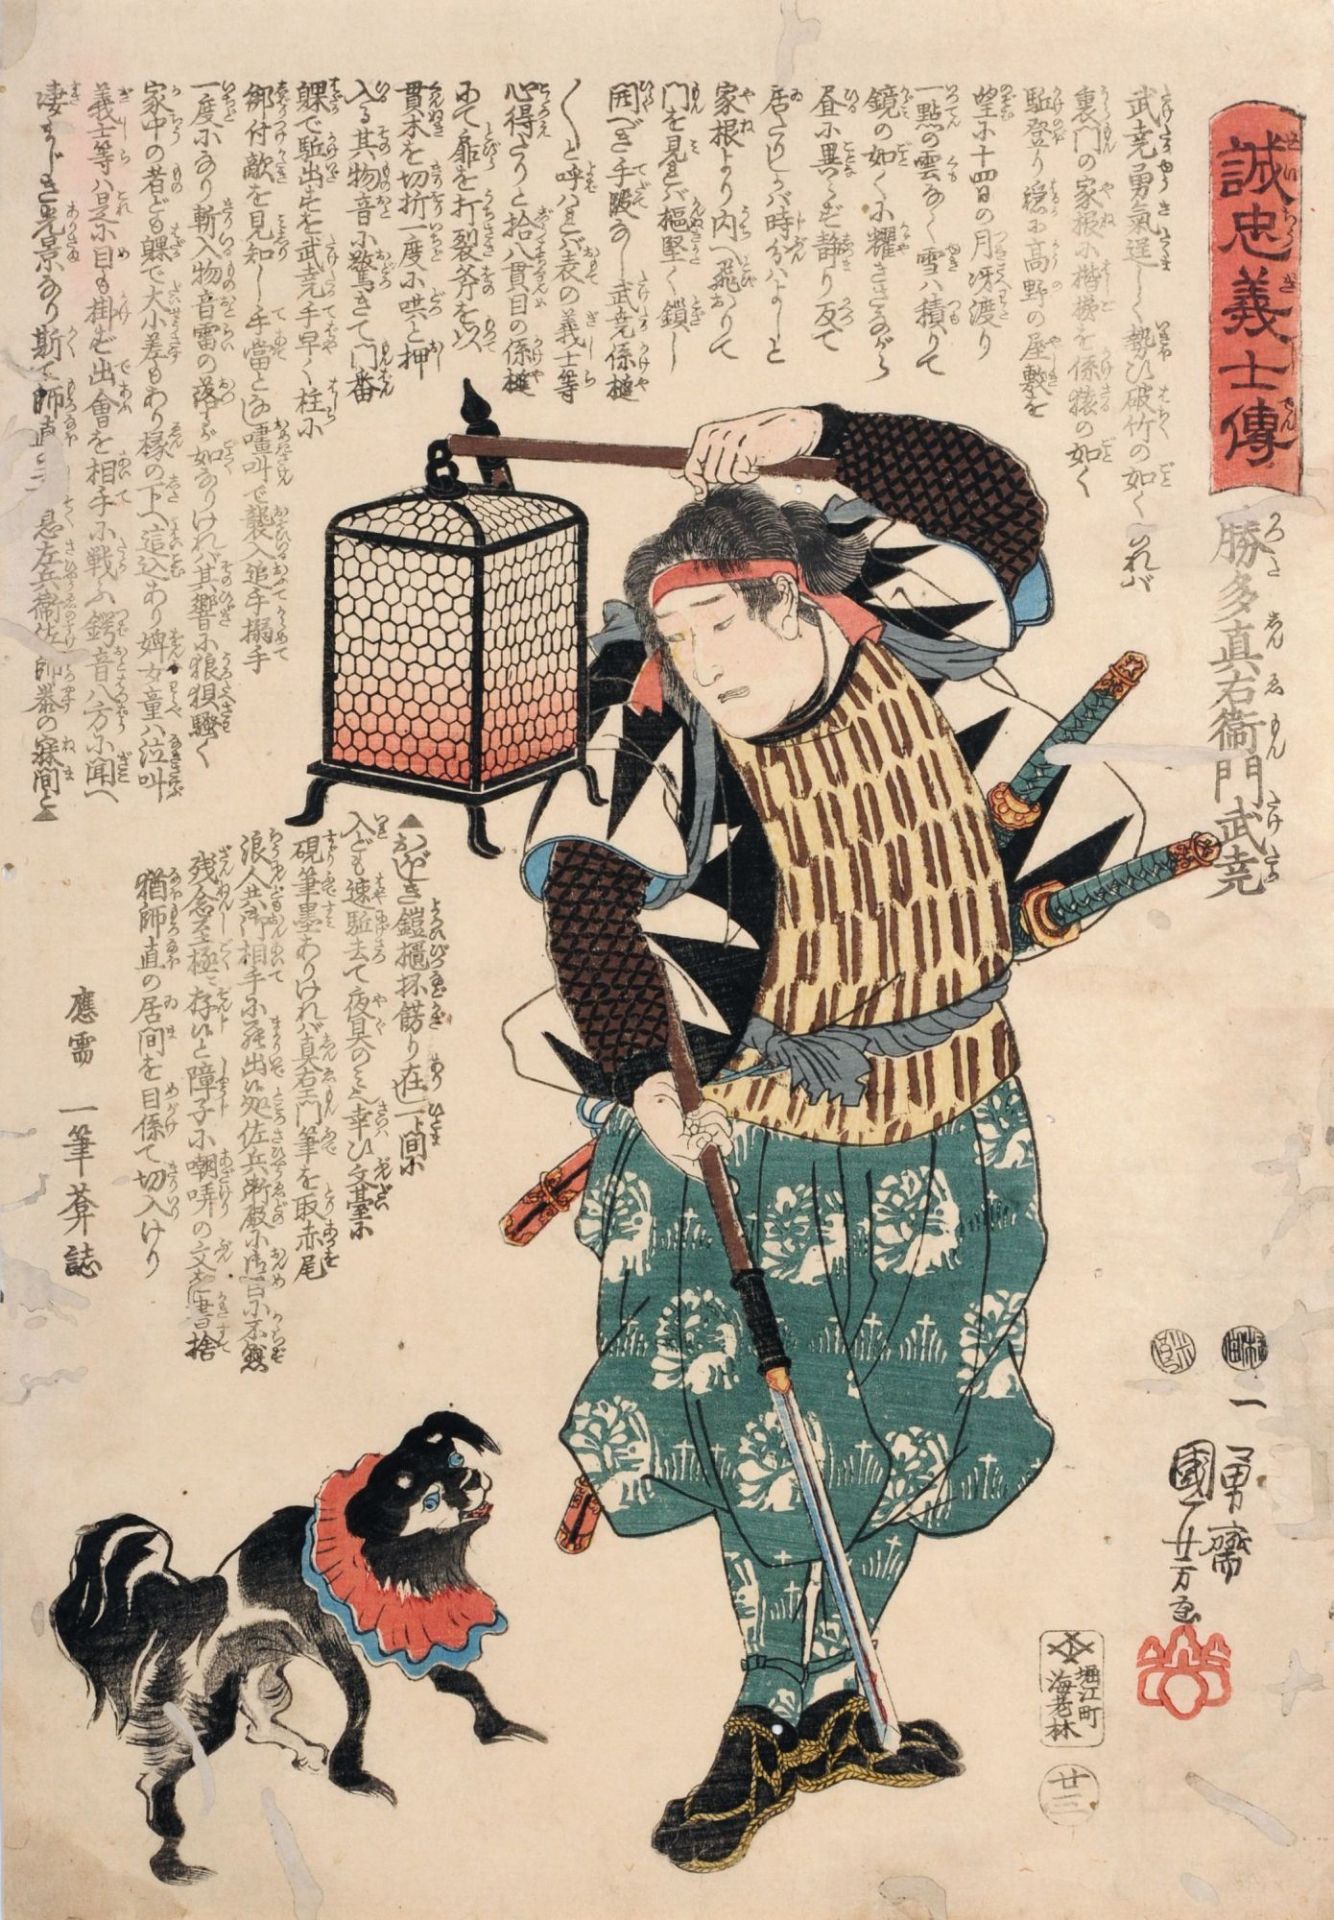 Utagawa Kuniyoshi "Katsuta Shin'emon Taketaka". 1847.